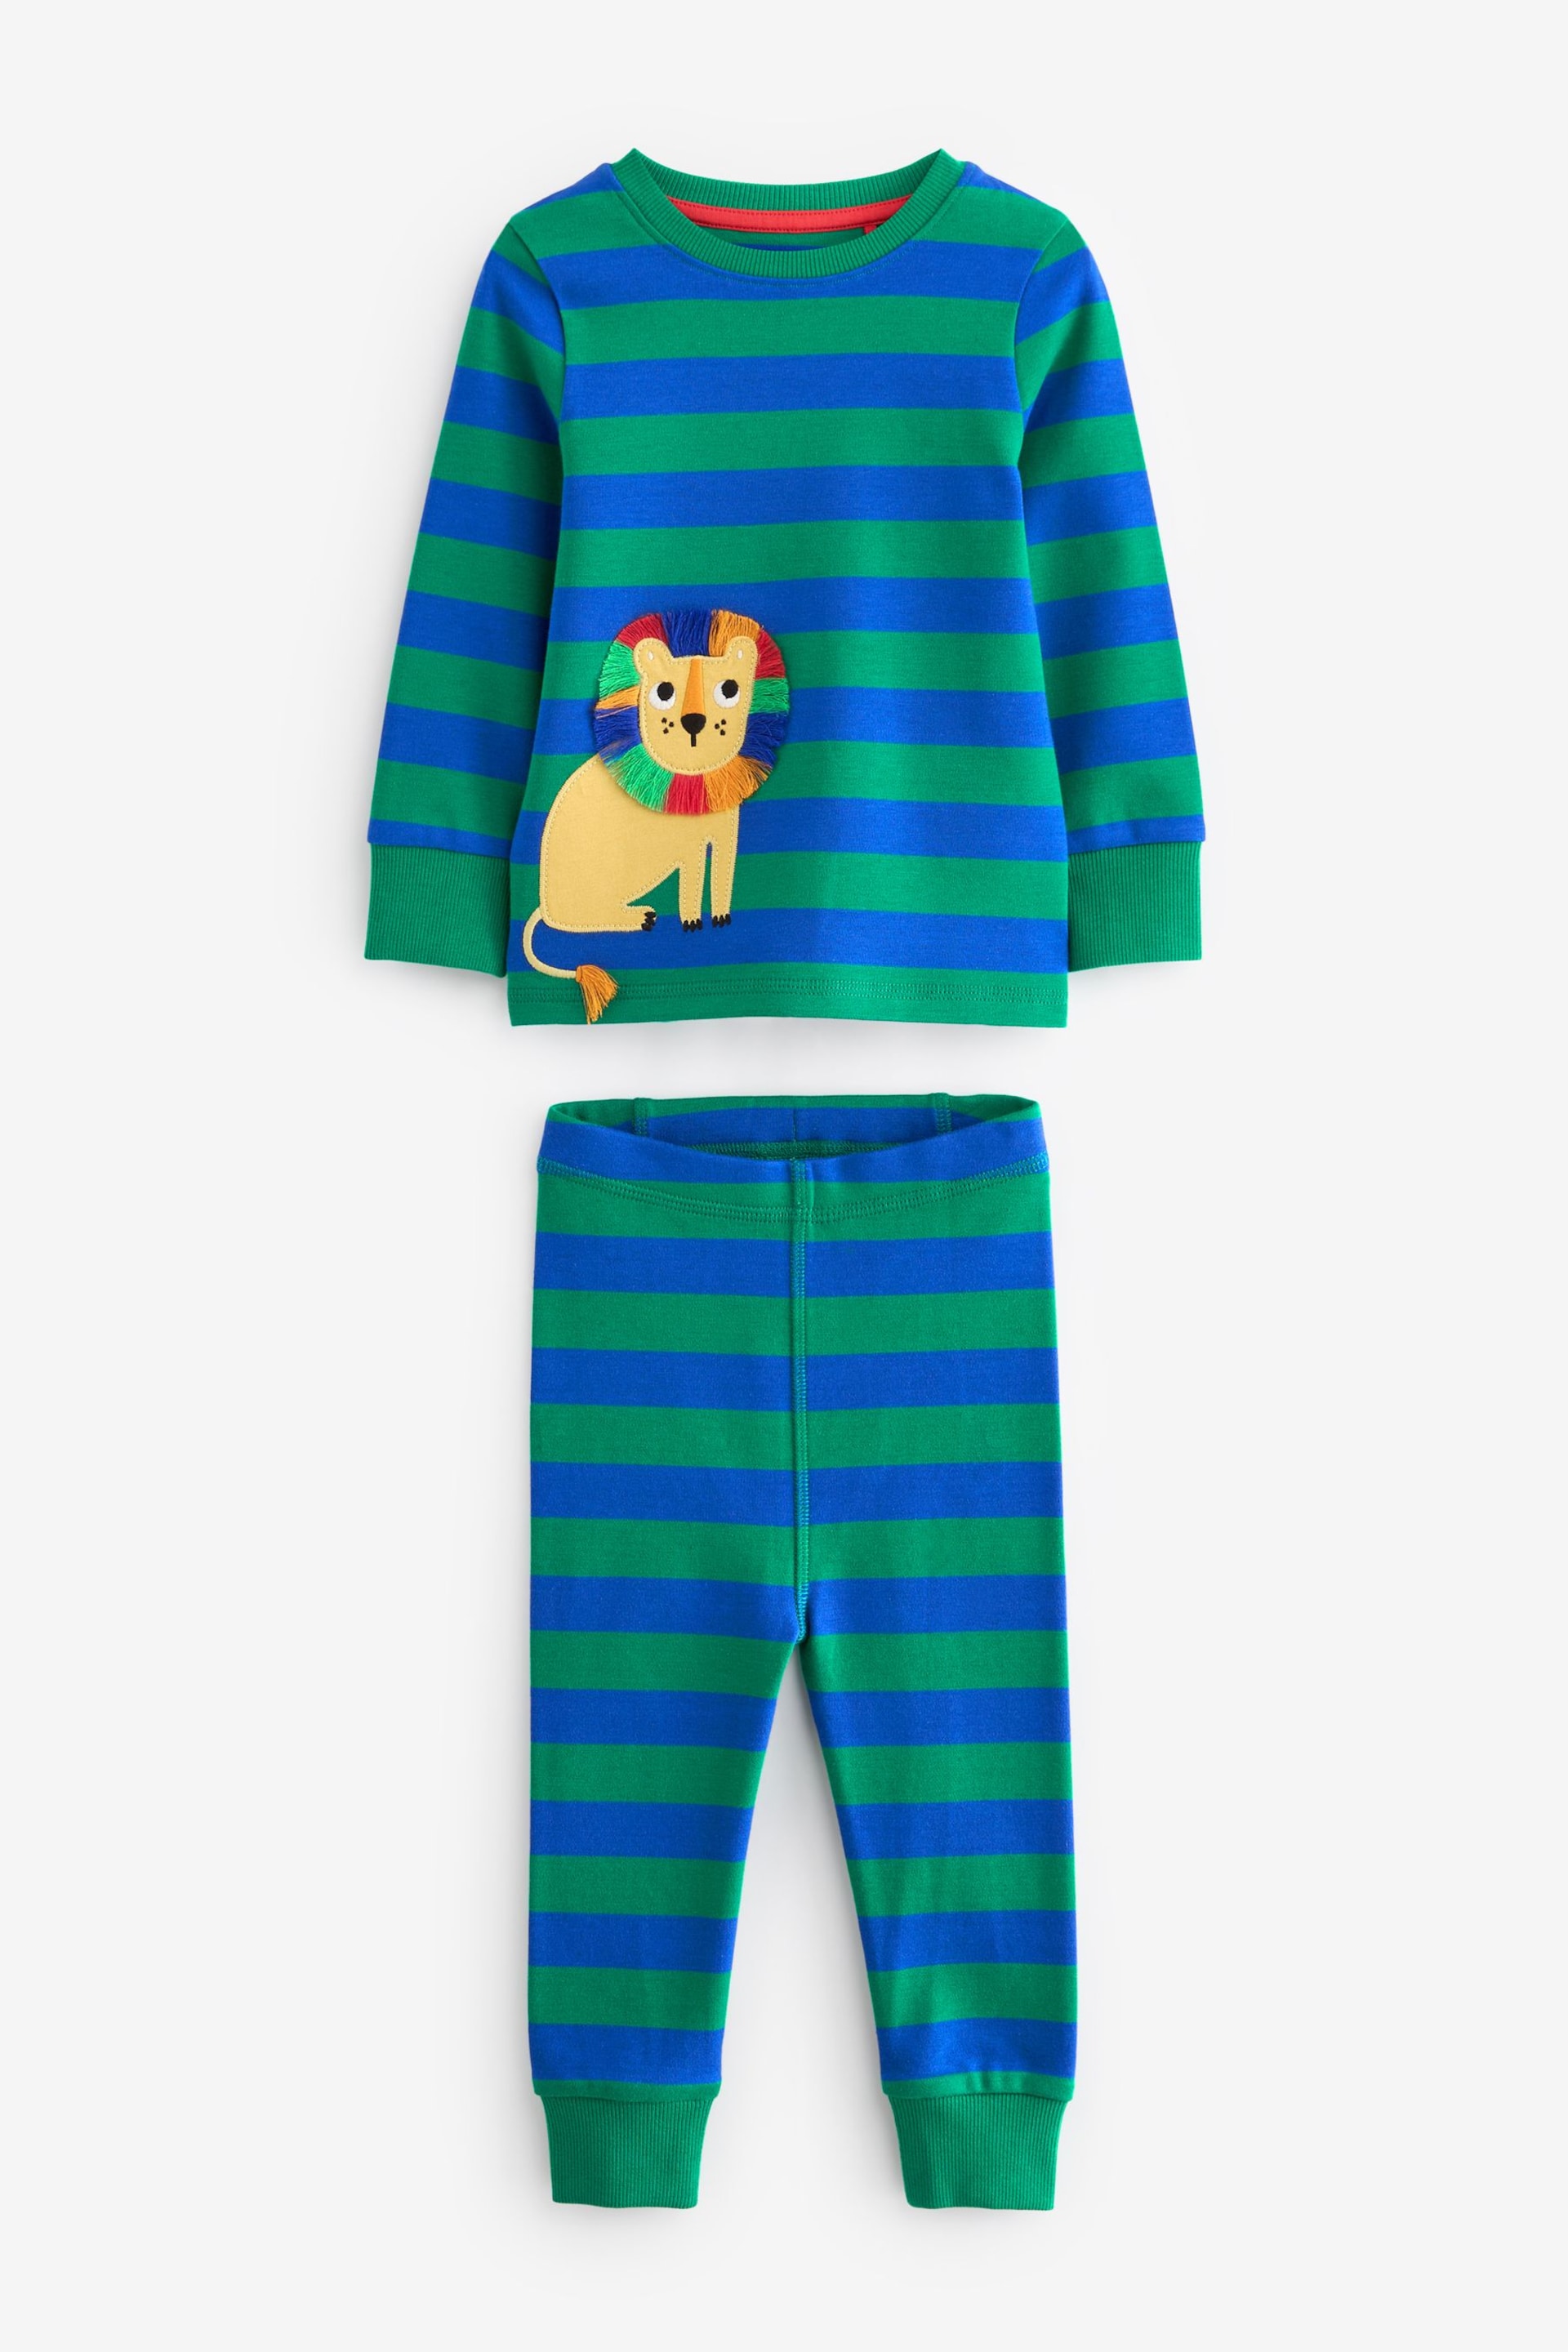 Multi Bright Animal Snuggle Pyjamas 3 Pack (9mths-8yrs) - Image 10 of 12